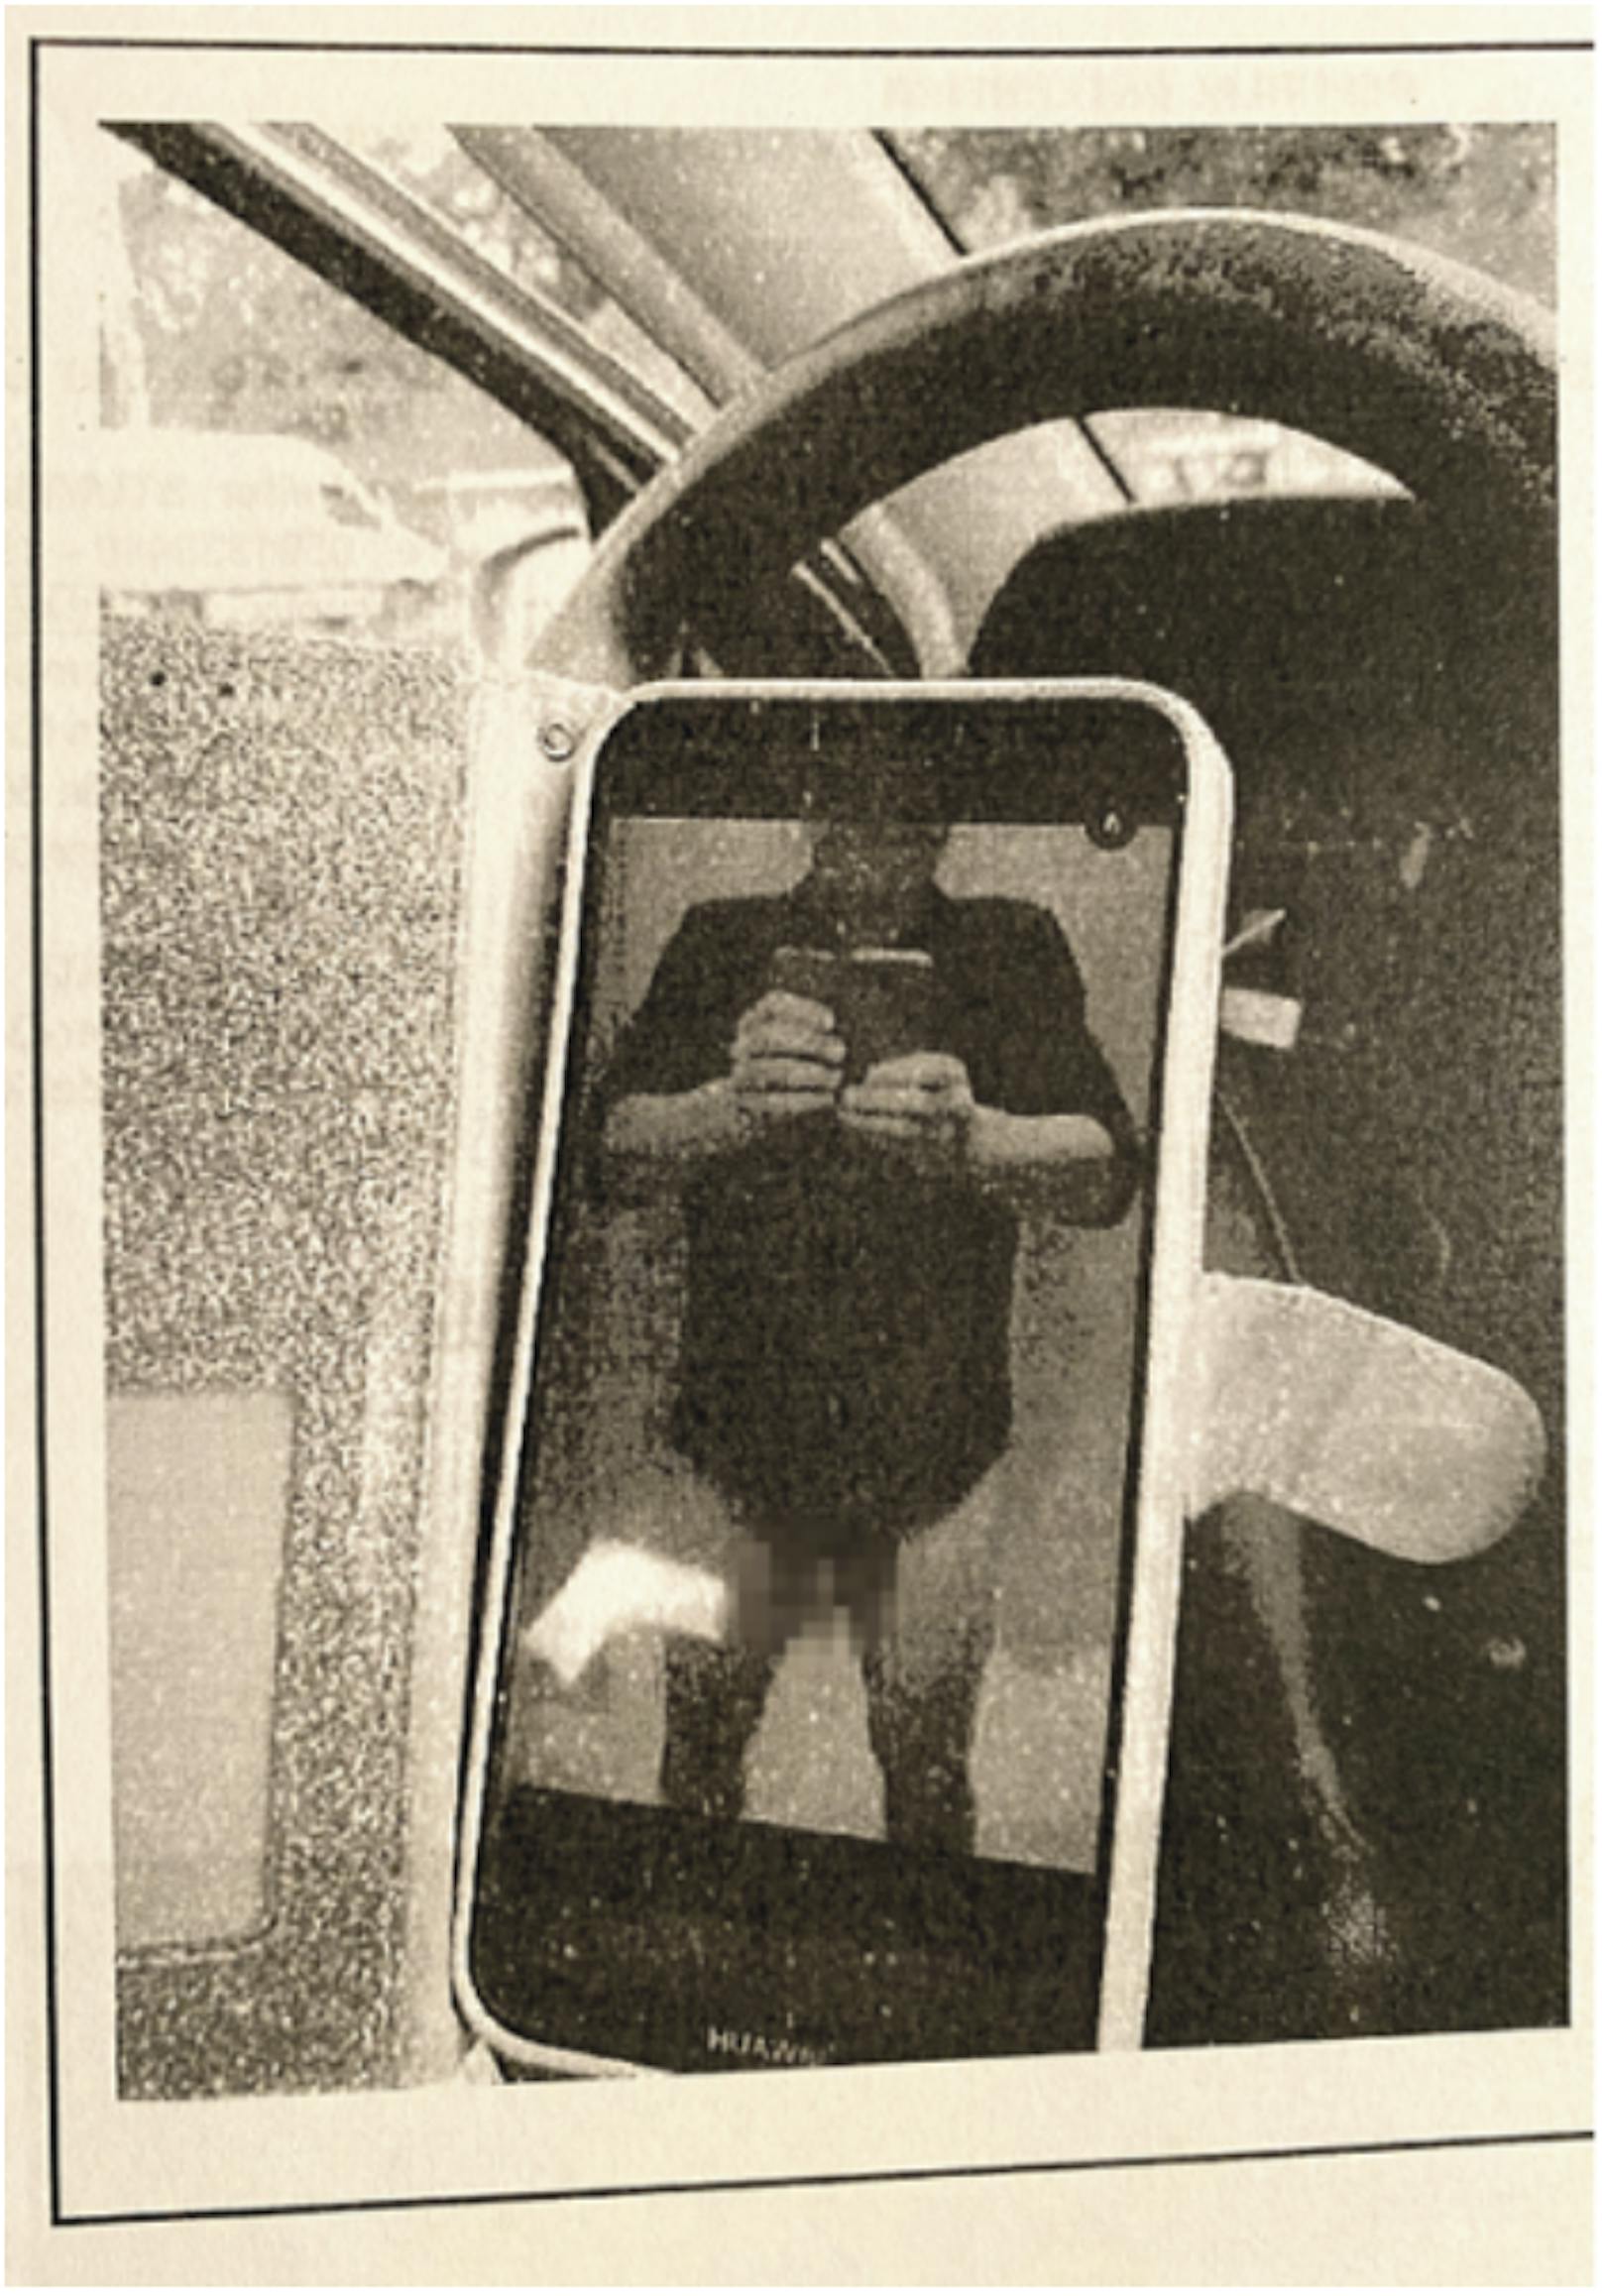 Originalbild: Ein Mirror-Selfie des Amtsdirektors mit heruntergelassener Hose....